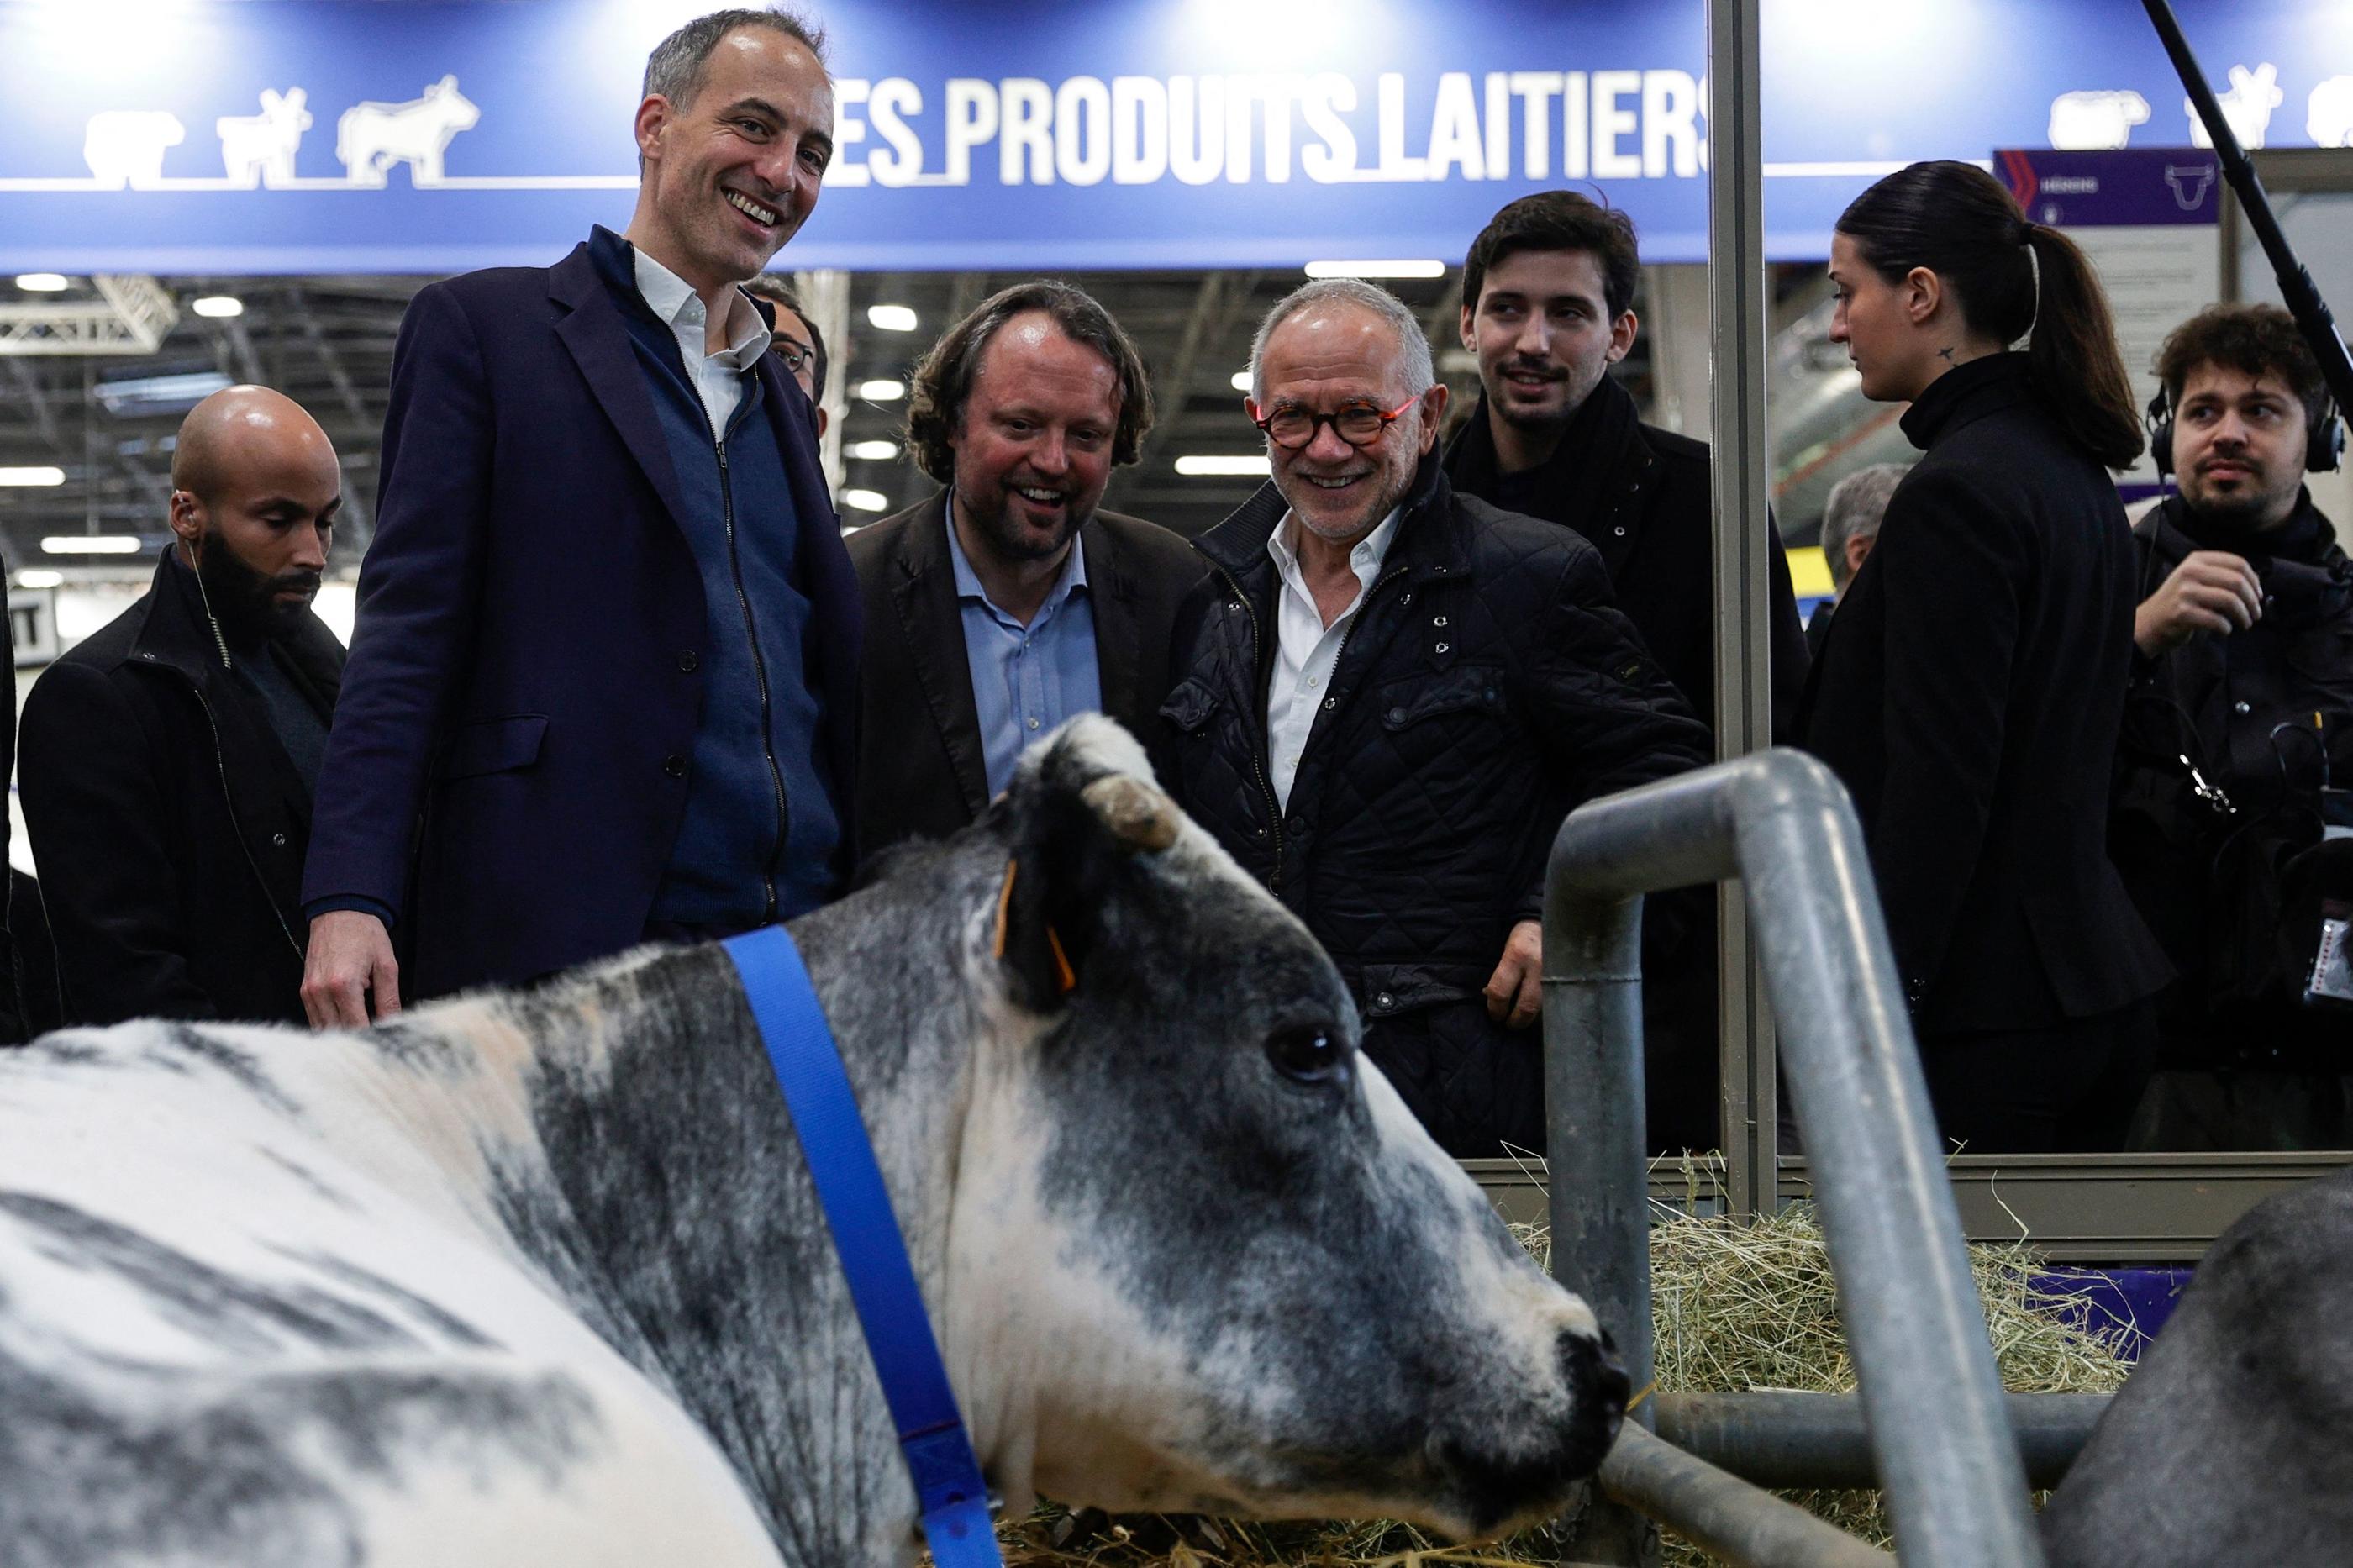 La tête de liste du parti socialiste Raphaël Glucksmann a parcouru dimanche les allées du Salon de l'agriculture. AFP/Geoffroy Van der Hasselt